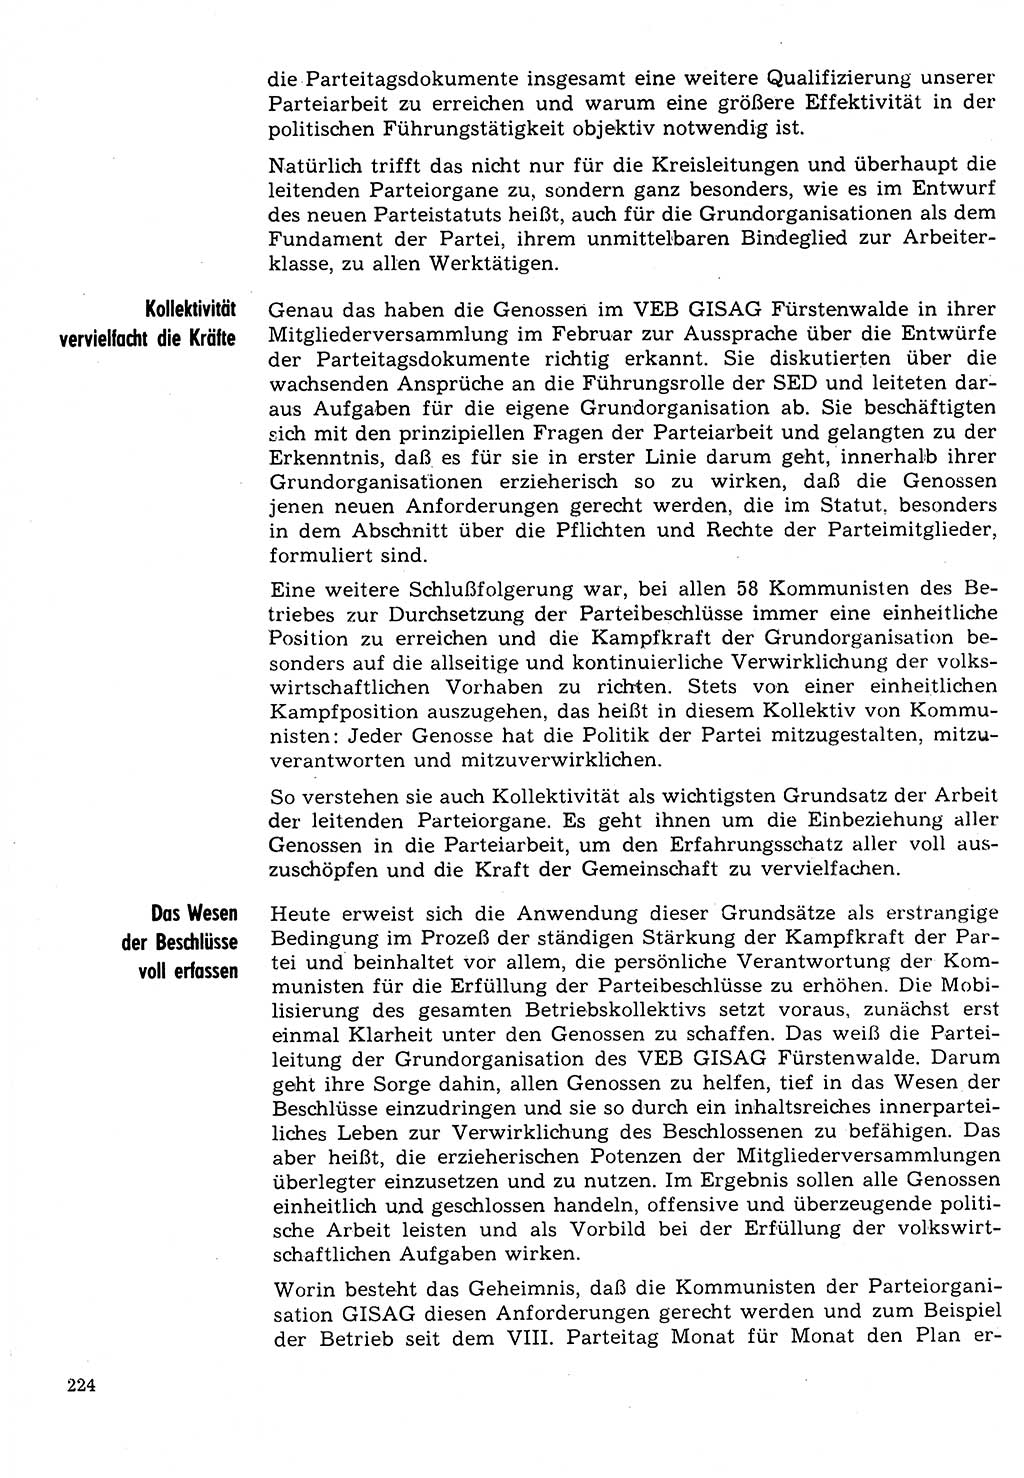 Neuer Weg (NW), Organ des Zentralkomitees (ZK) der SED (Sozialistische Einheitspartei Deutschlands) für Fragen des Parteilebens, 31. Jahrgang [Deutsche Demokratische Republik (DDR)] 1976, Seite 224 (NW ZK SED DDR 1976, S. 224)